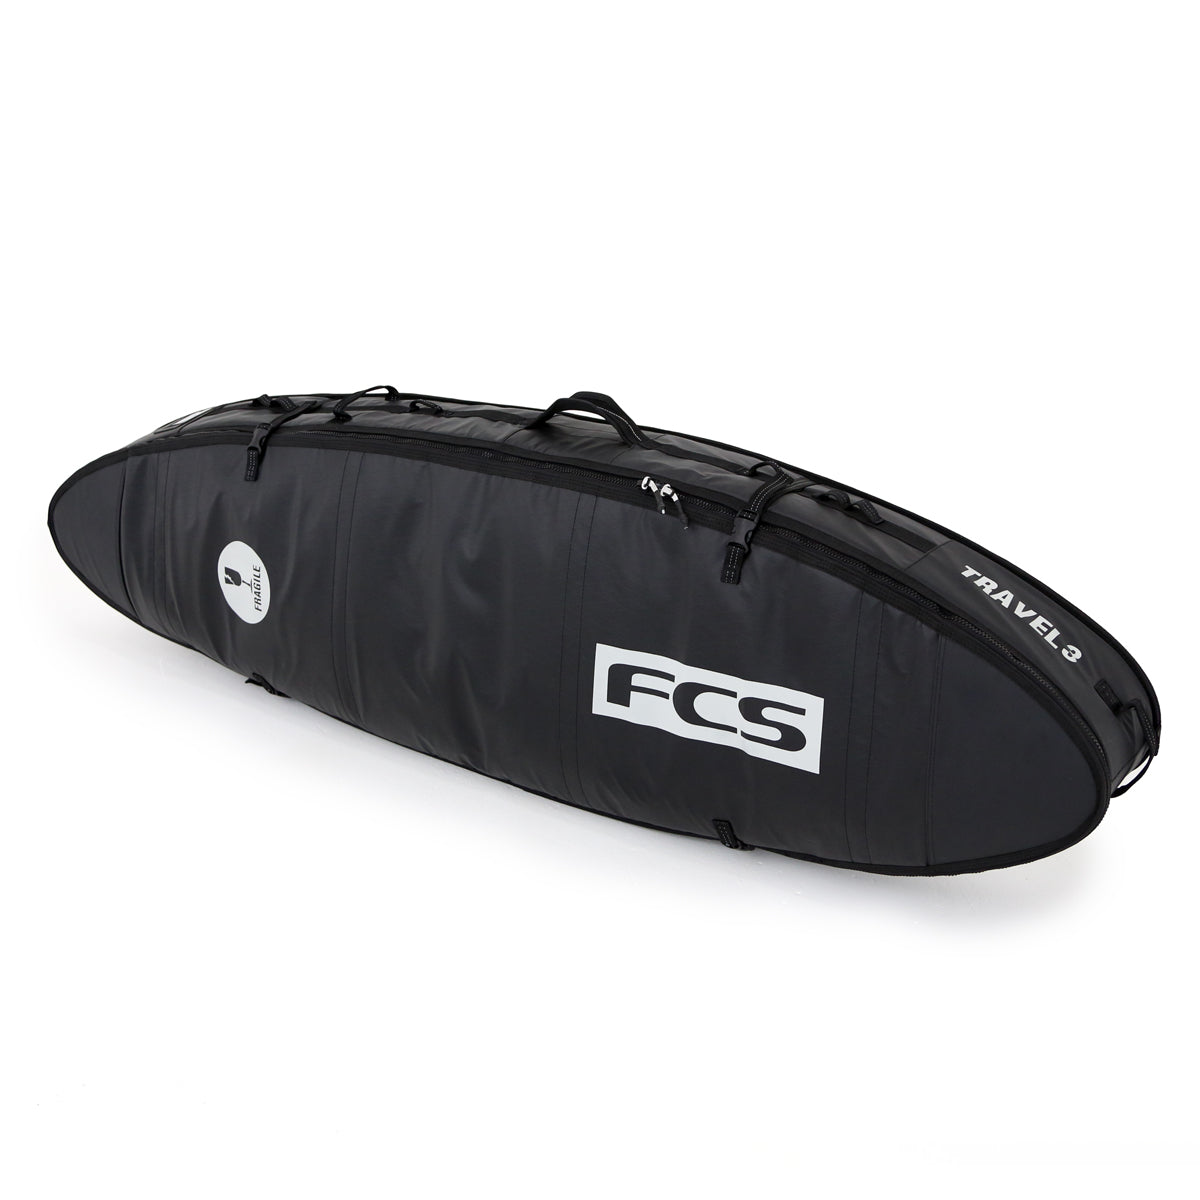 FCS Travel 3 All Purpose 6ft 3 Surf Bag - Black/Grey